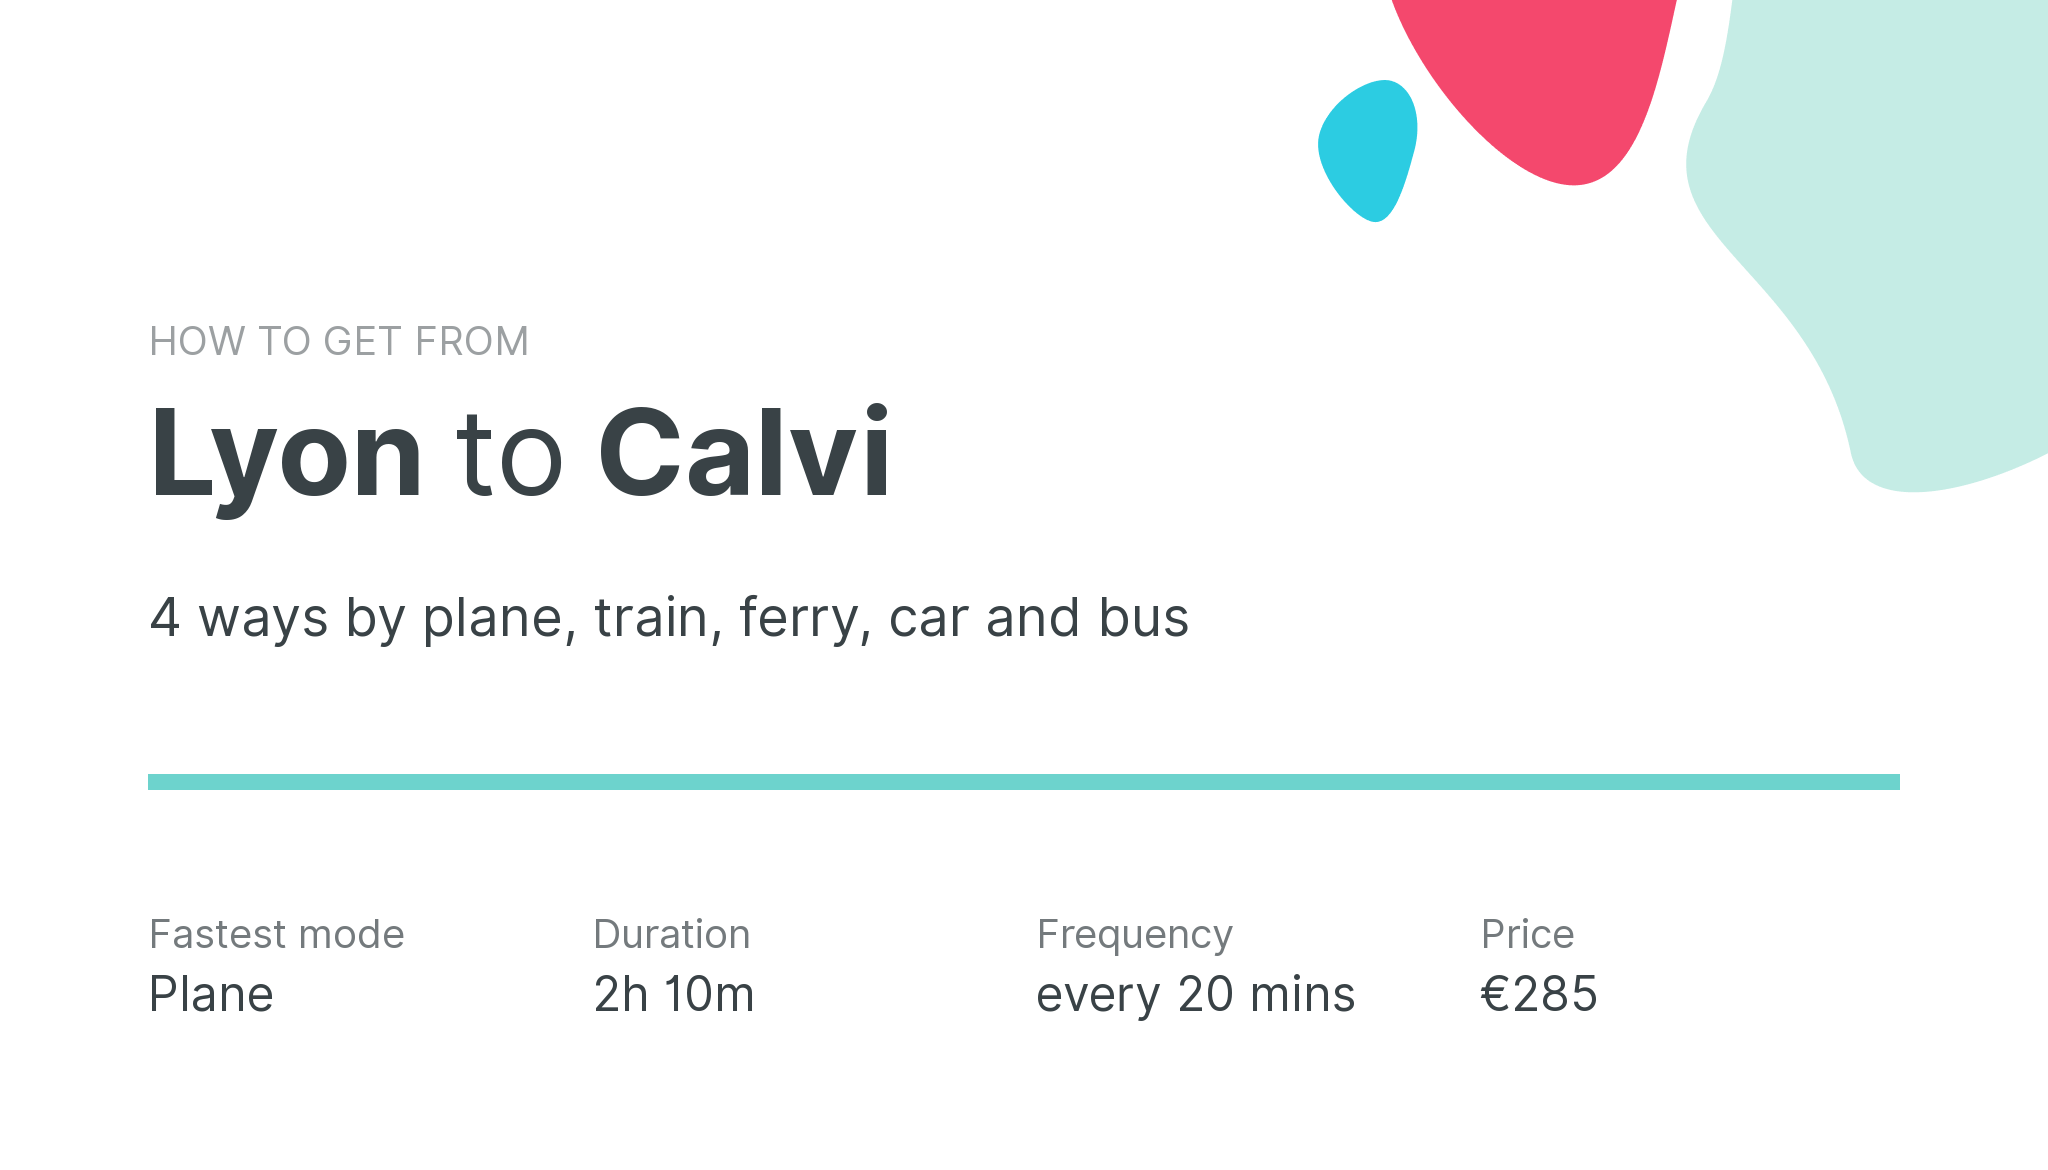 How do I get from Lyon to Calvi